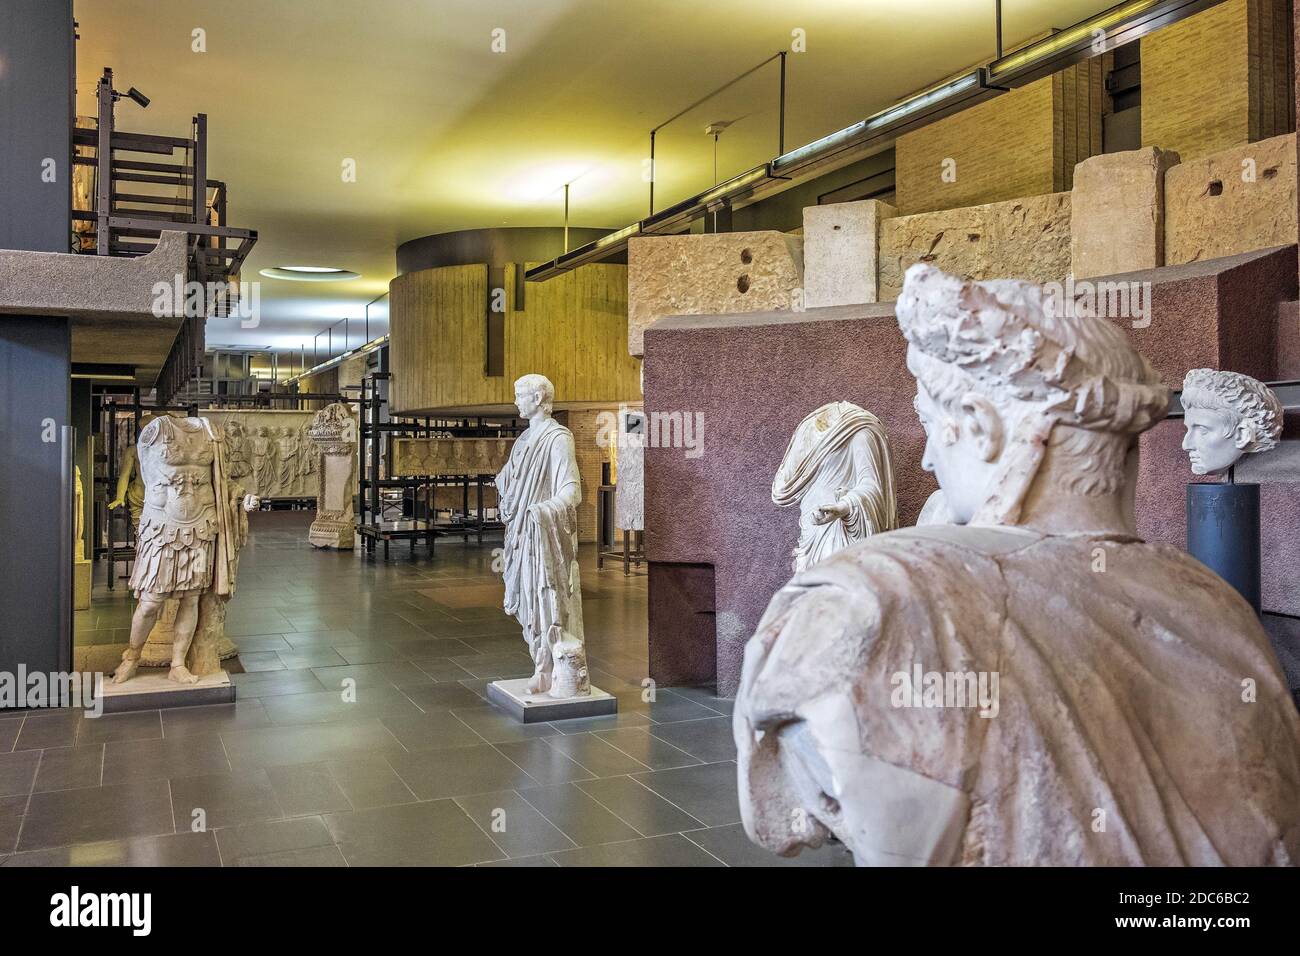 Rome, Cité du Vatican / Italie - 2019/06/15: Expositions d'art de sculpture au Musée Pie-chrétien -Museo Pio Cristiano - fait partie des musées du Vatican Banque D'Images